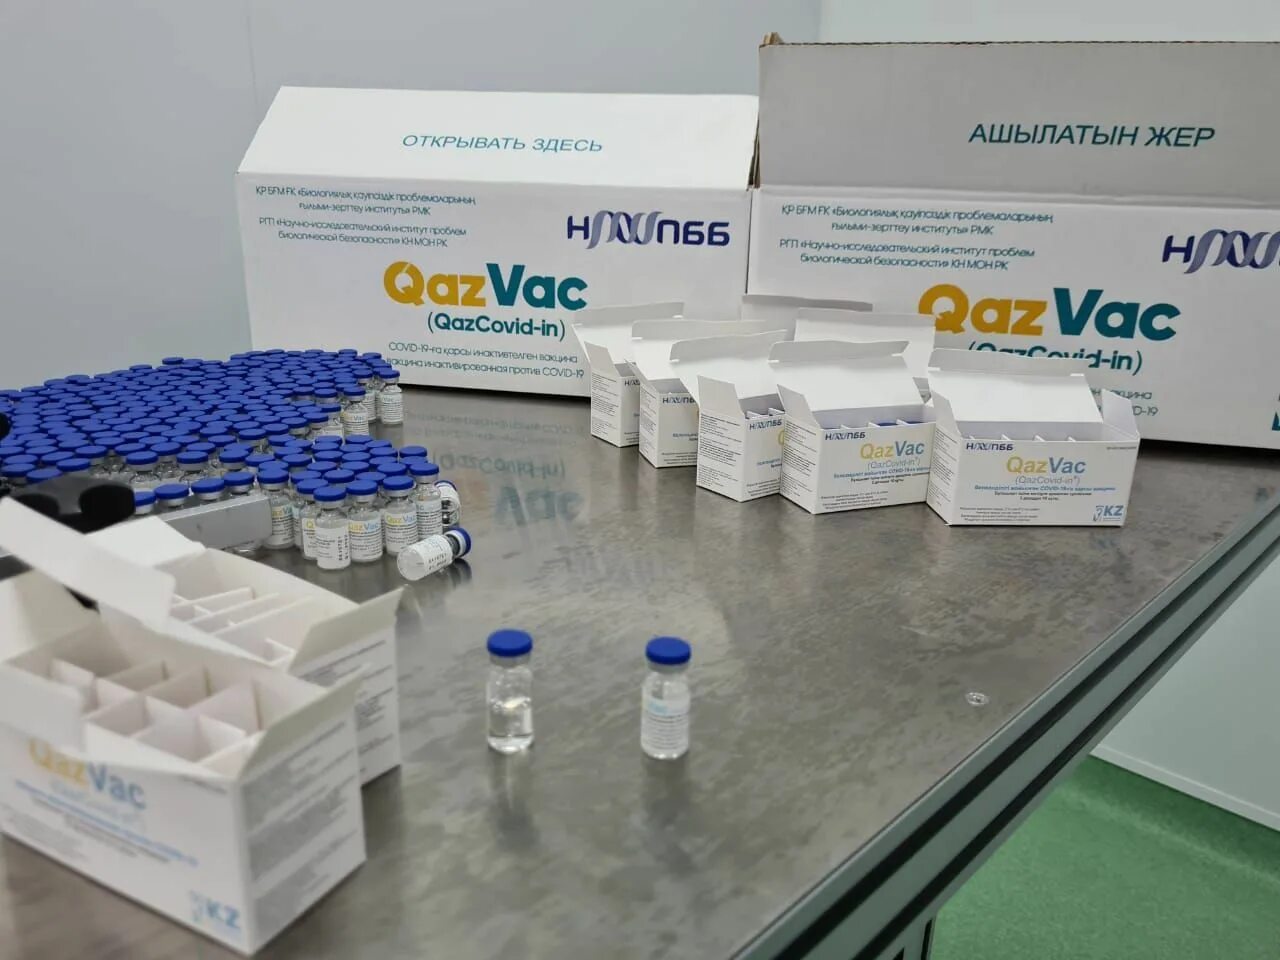 Вакцина казахстан. Qazvac. Воз вакцина от коронавируса. Казвак картинки. Казахстанская соплиника.